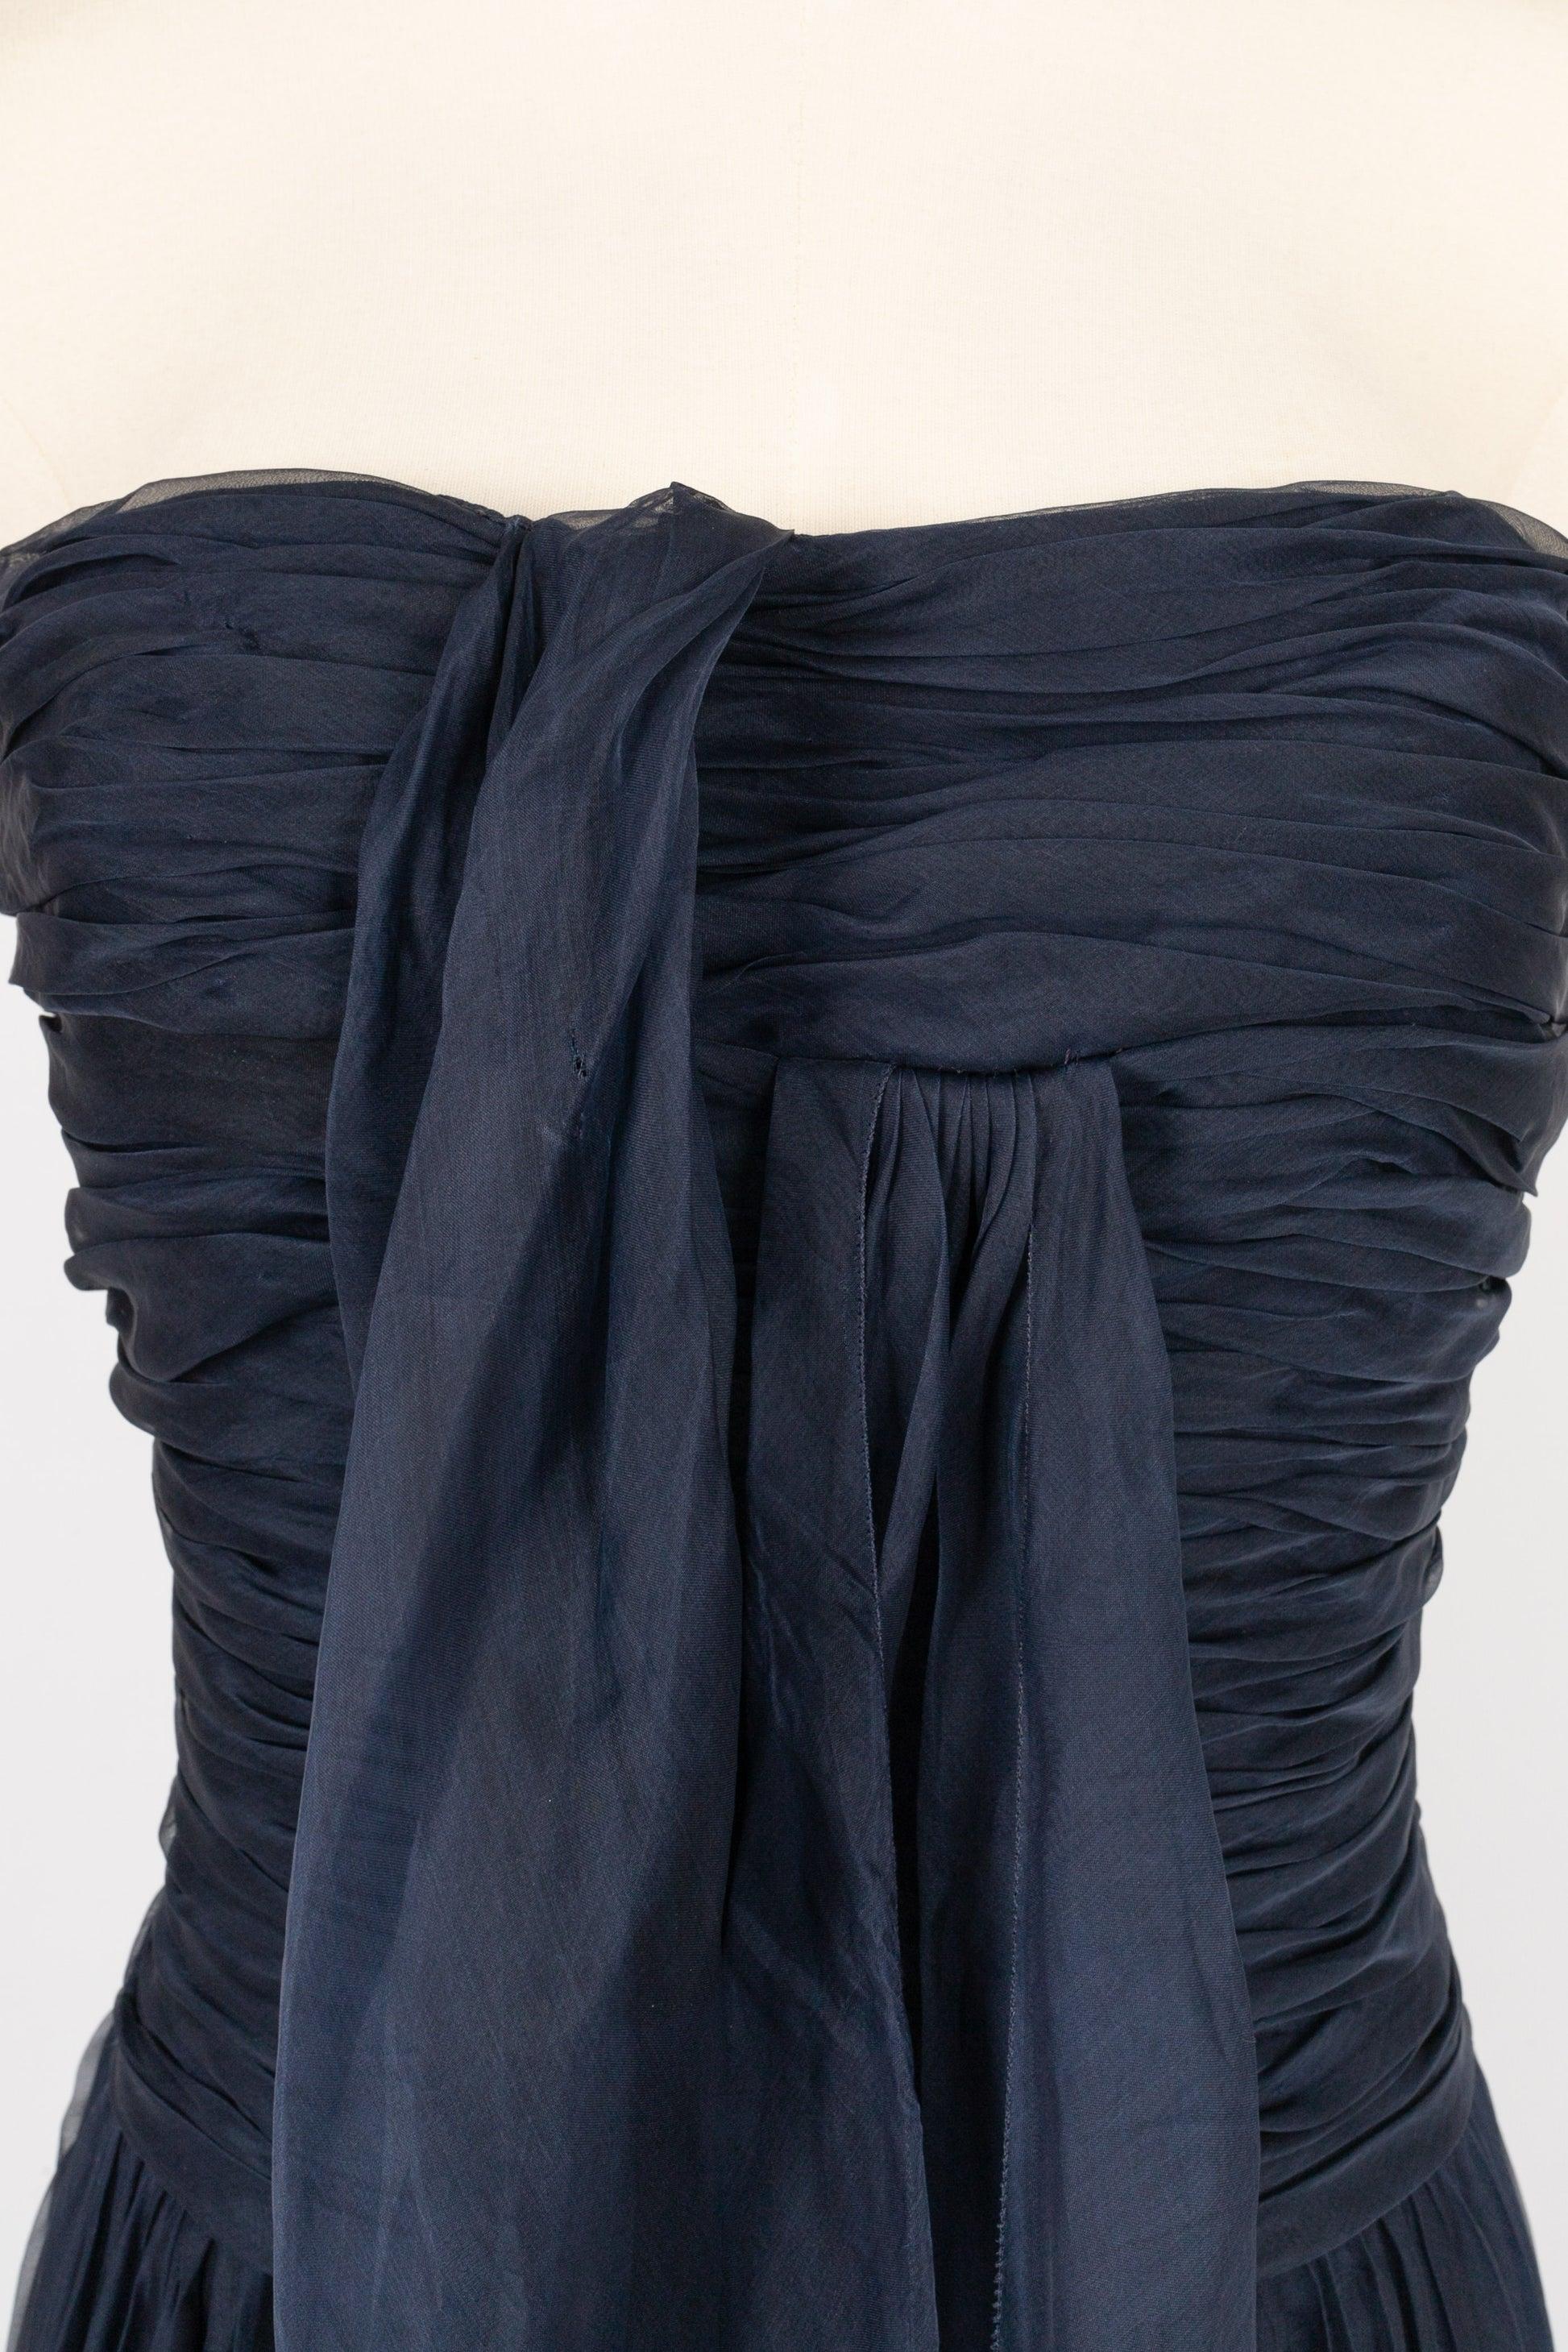 Chanel Long Bustier Dress in Navy Blue Pleated Silk Taffeta 1